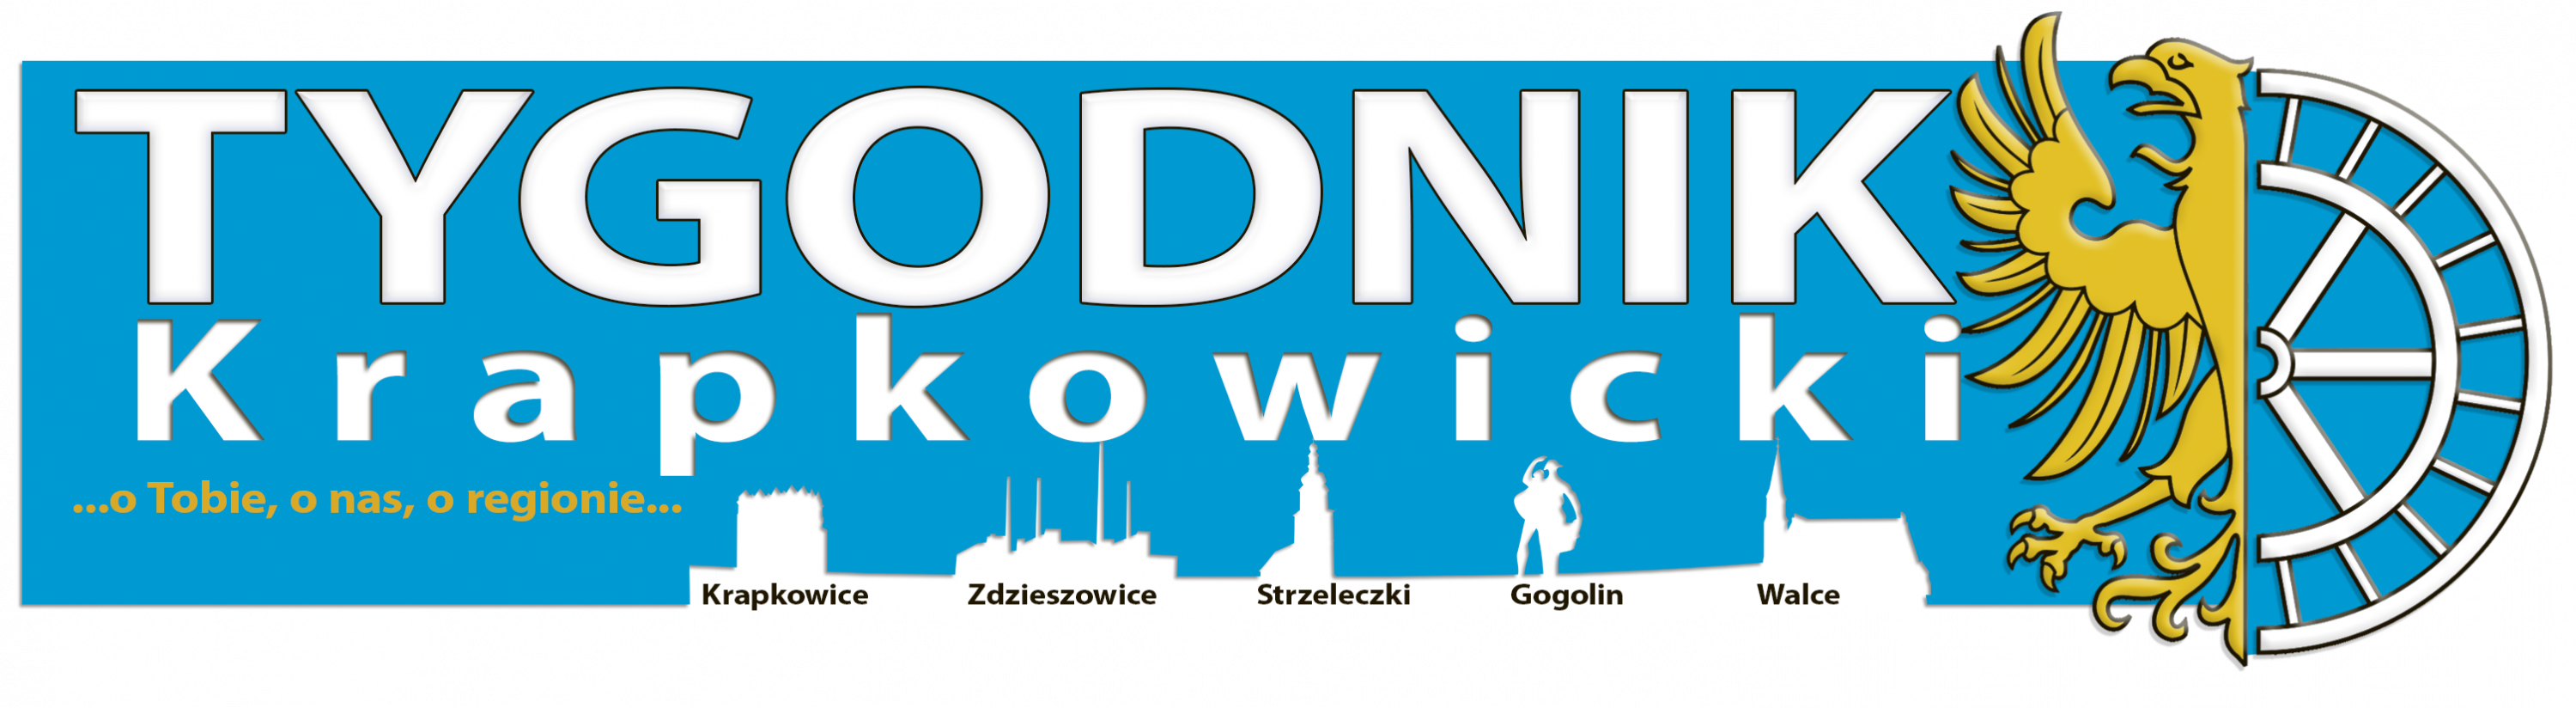 Tygodnik Krapkowicki - wiadomości z powiatu krapkowickiego, w tym z gmin Krapkowice, Gogolin, Zdzieszowice, Strzeleczki i Walce.